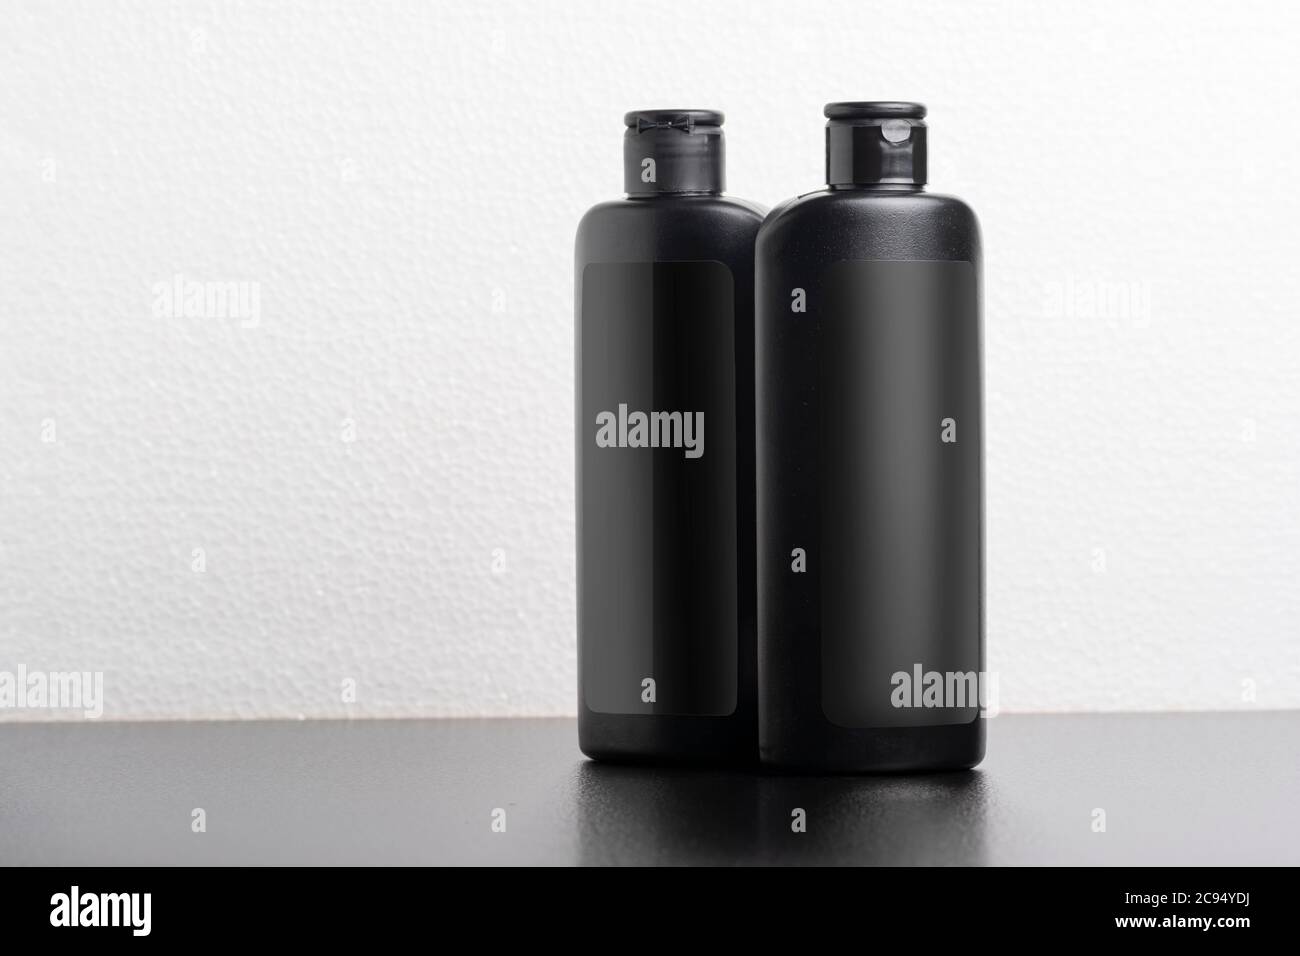 Bottiglie di shampoo per capelli neri davanti allo sfondo grigio chiaro, modello di serie mock-up modificabile pronto per il tuo design, percorso di selezione incluso. Foto Stock